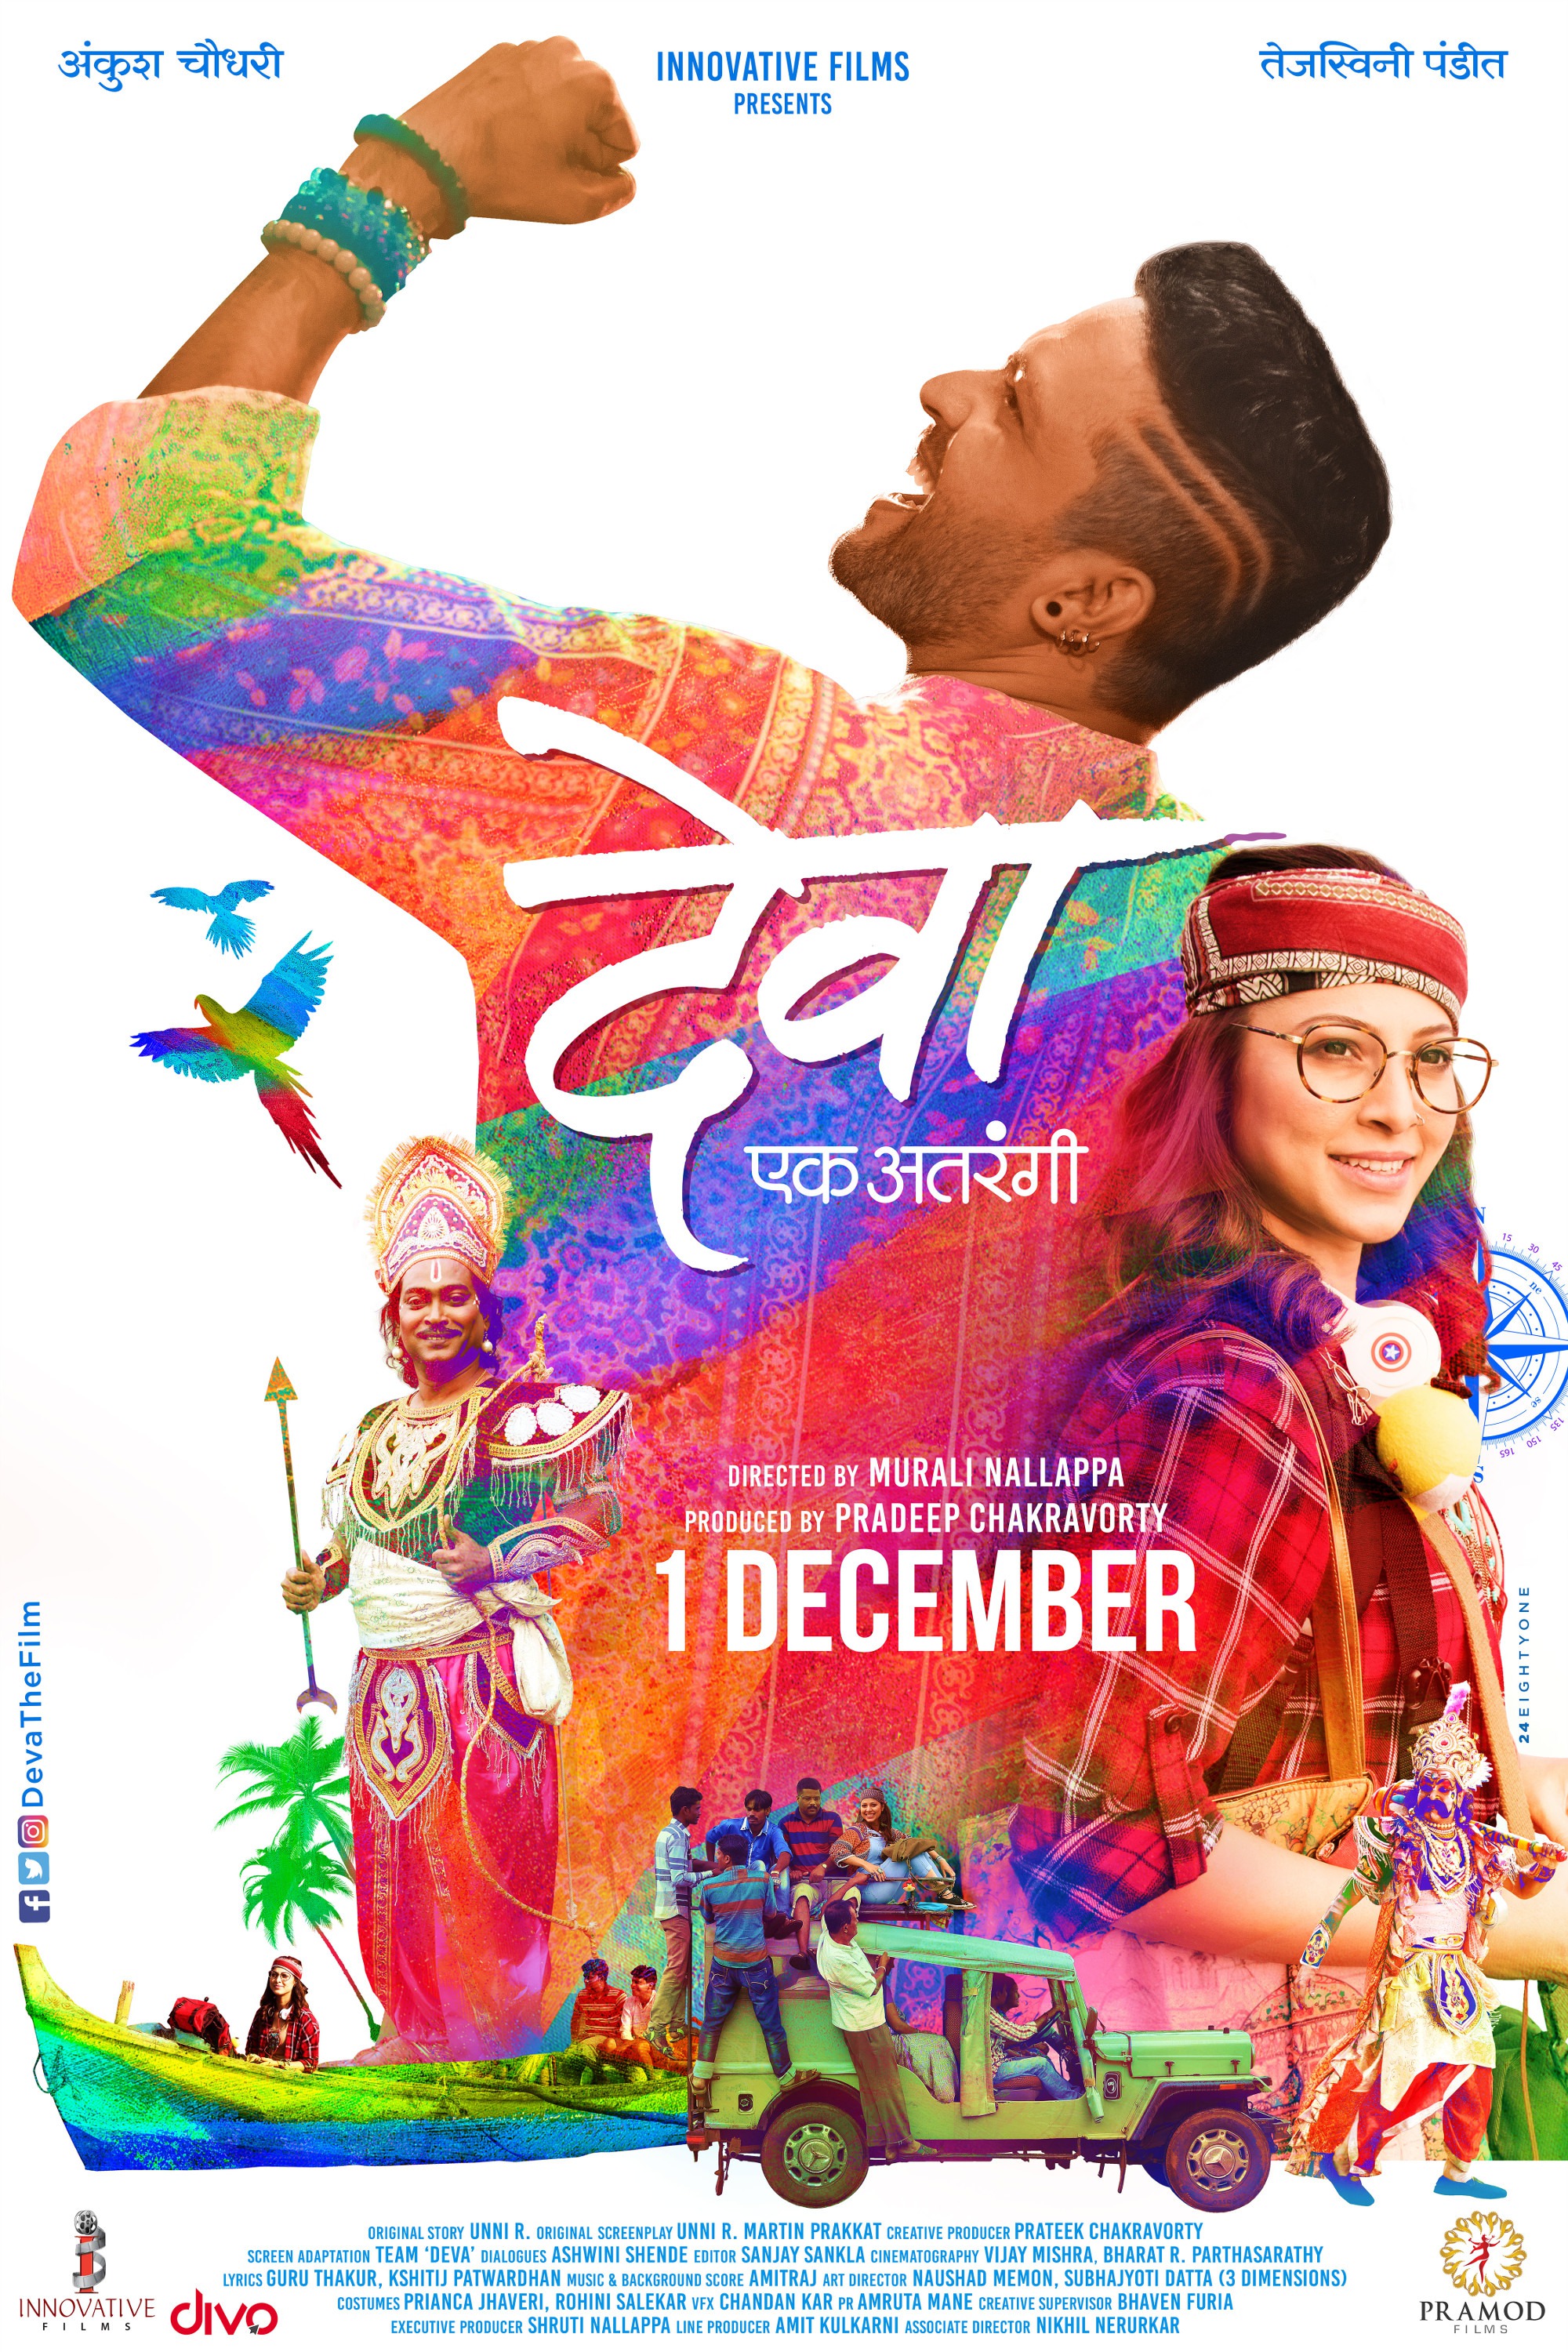 Mega Sized Movie Poster Image for Deva Ek Atarangee 